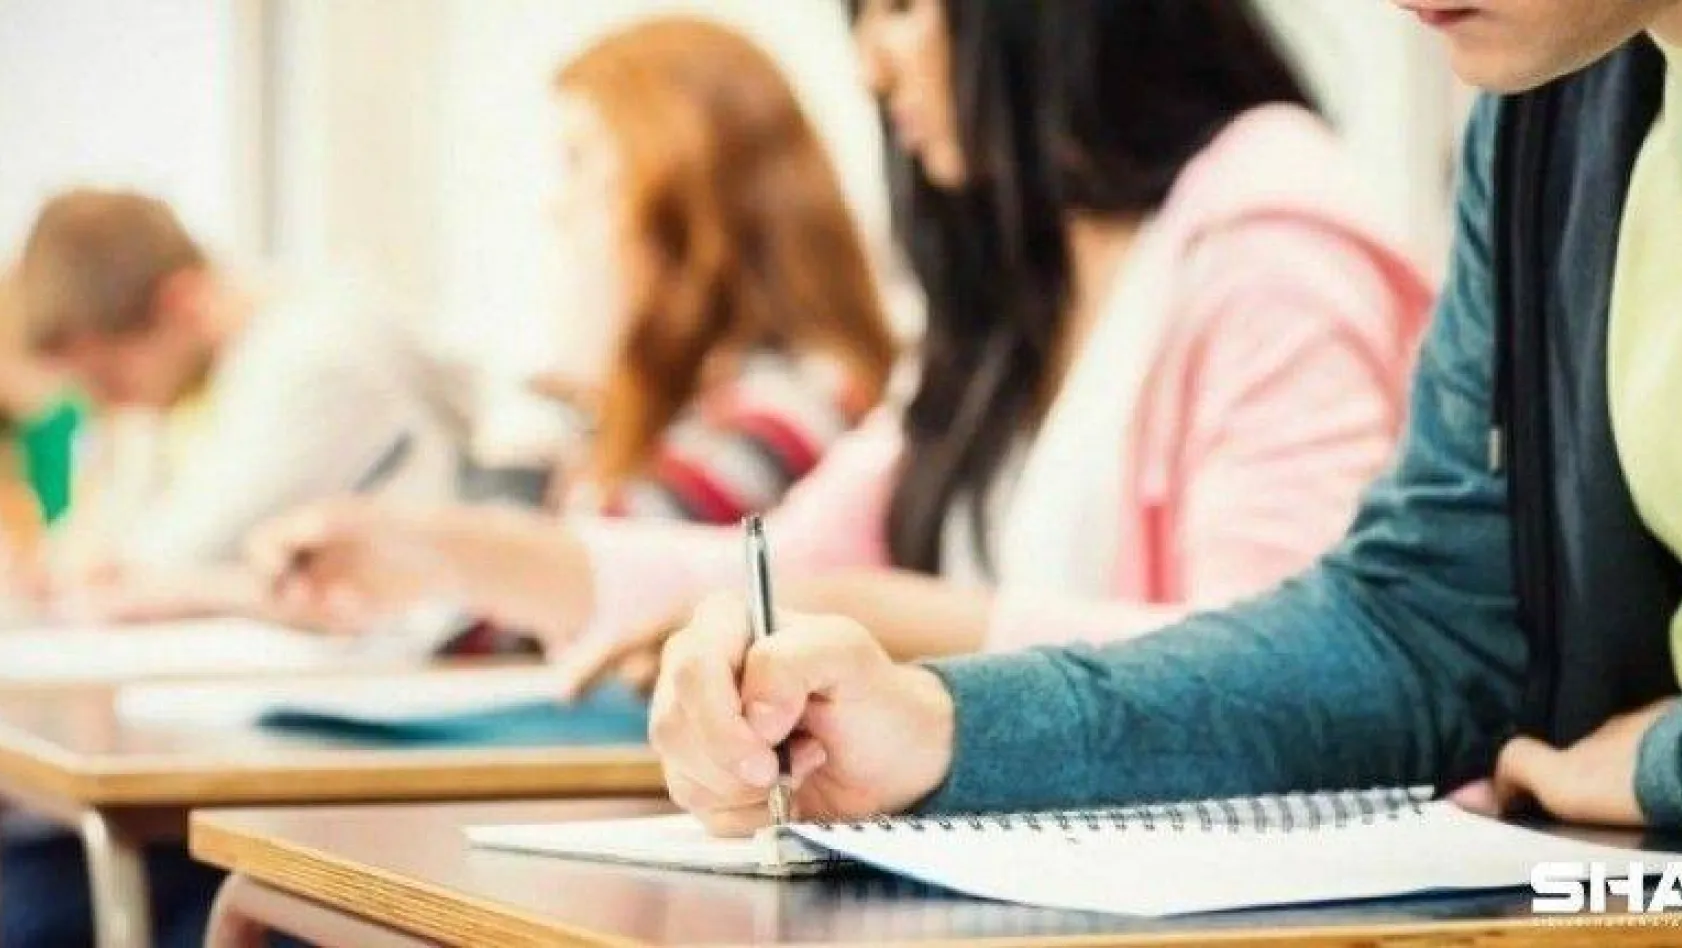 Bakanlıktan 81 İl Valiliğine 'Liselere Giriş Sınavı Tedbirleri' konulu genelge